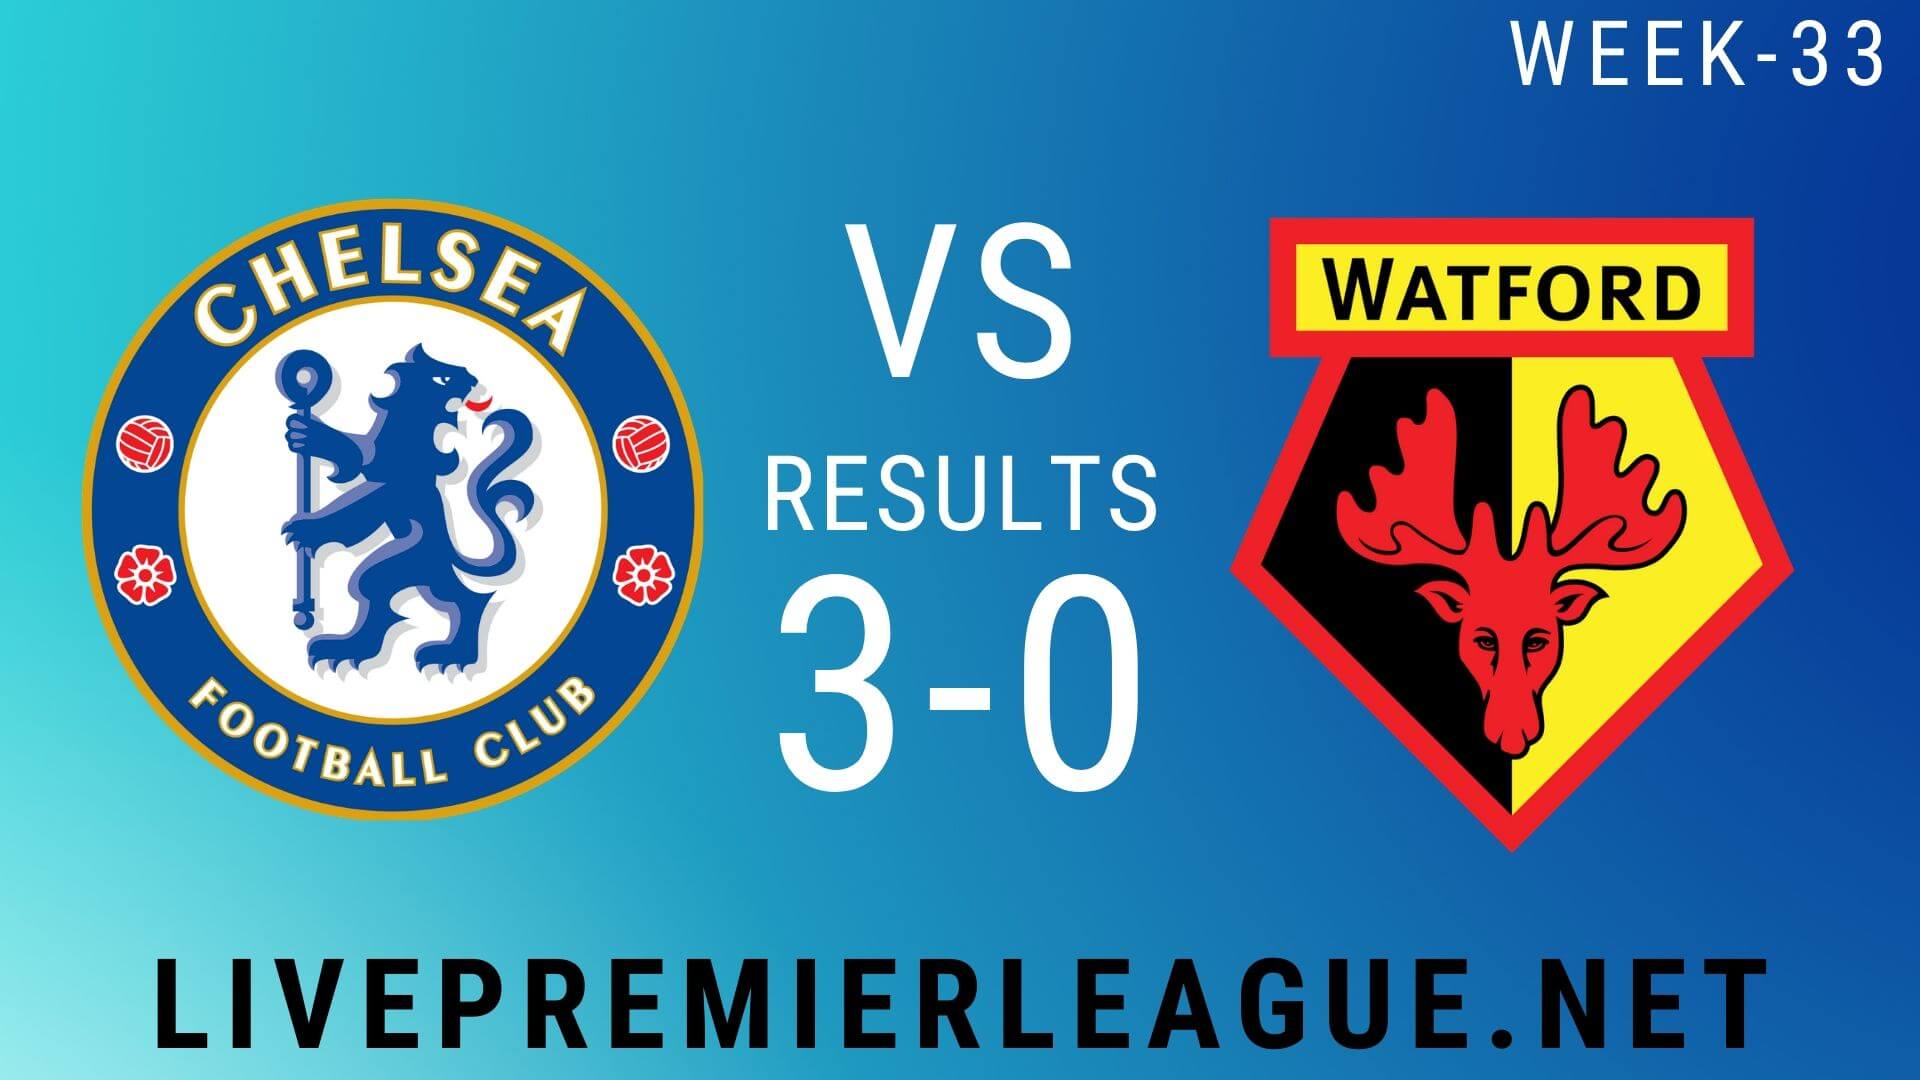 Chelsea Vs Watford | Week 33 Result 2020